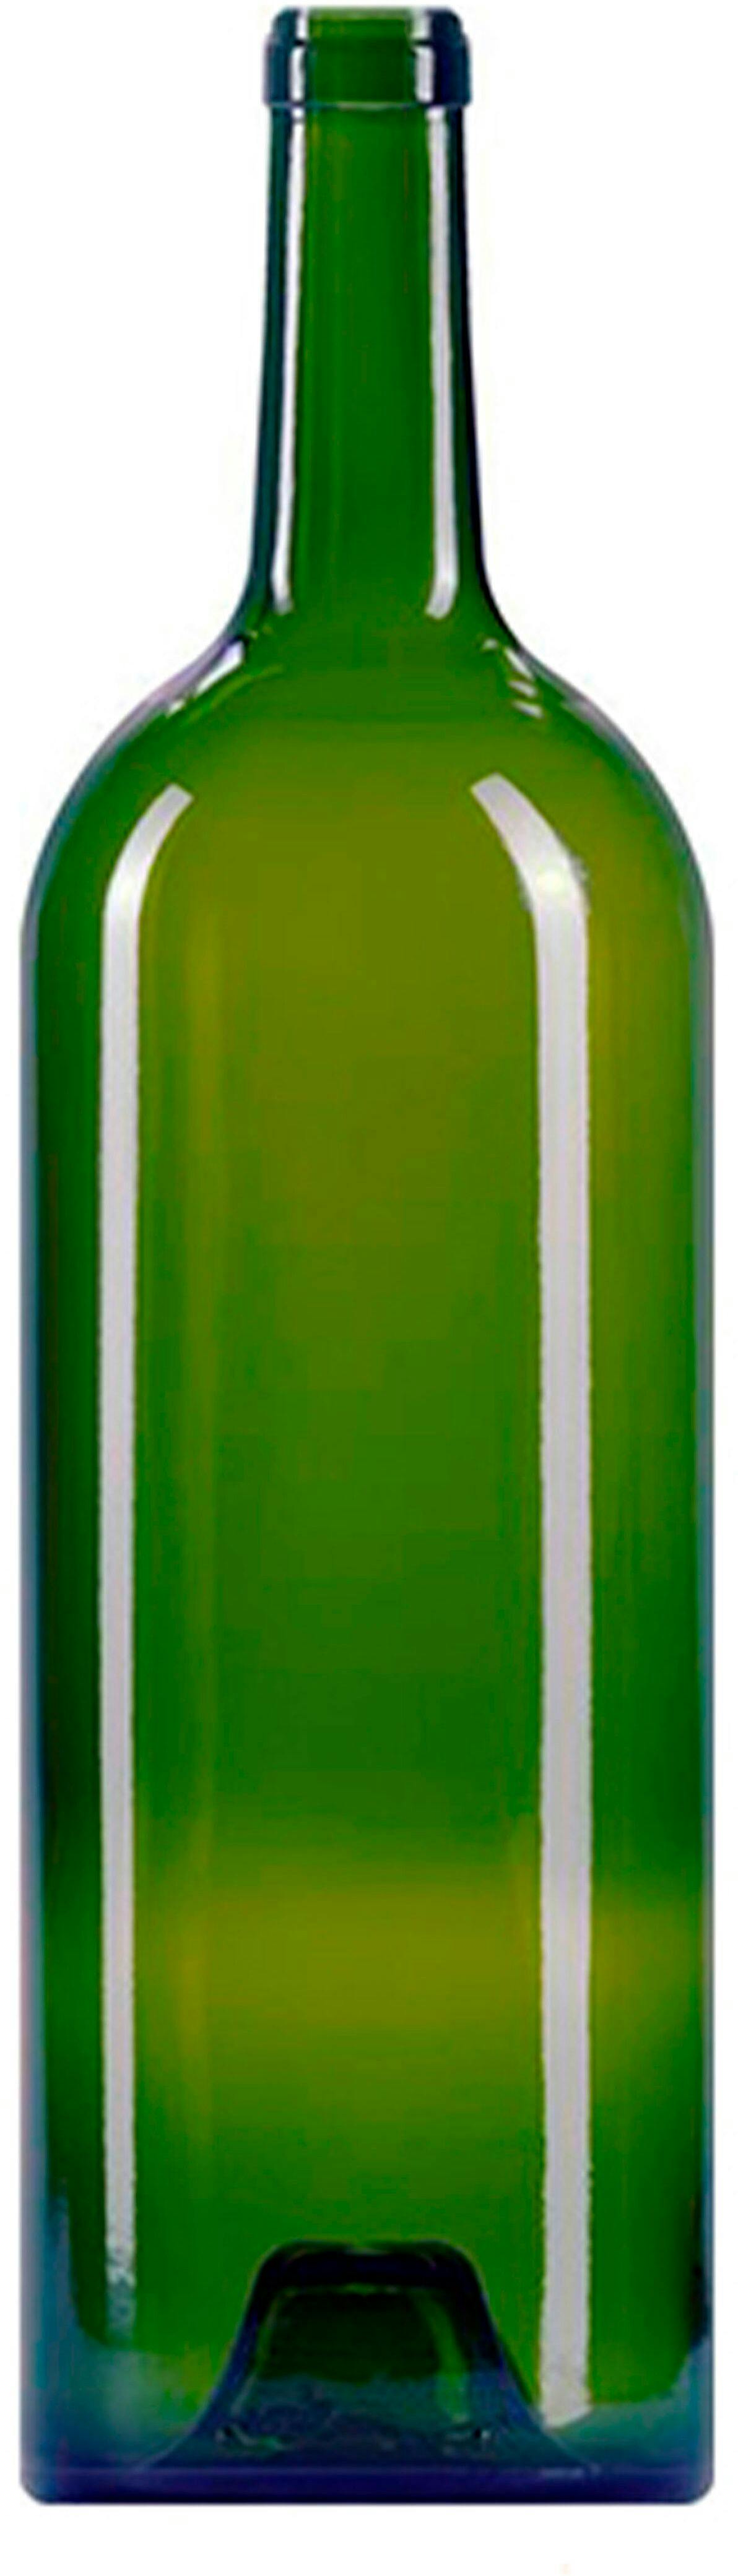 Bottiglia bordolese   GRAND VIN 1500 ml BG-Sughero